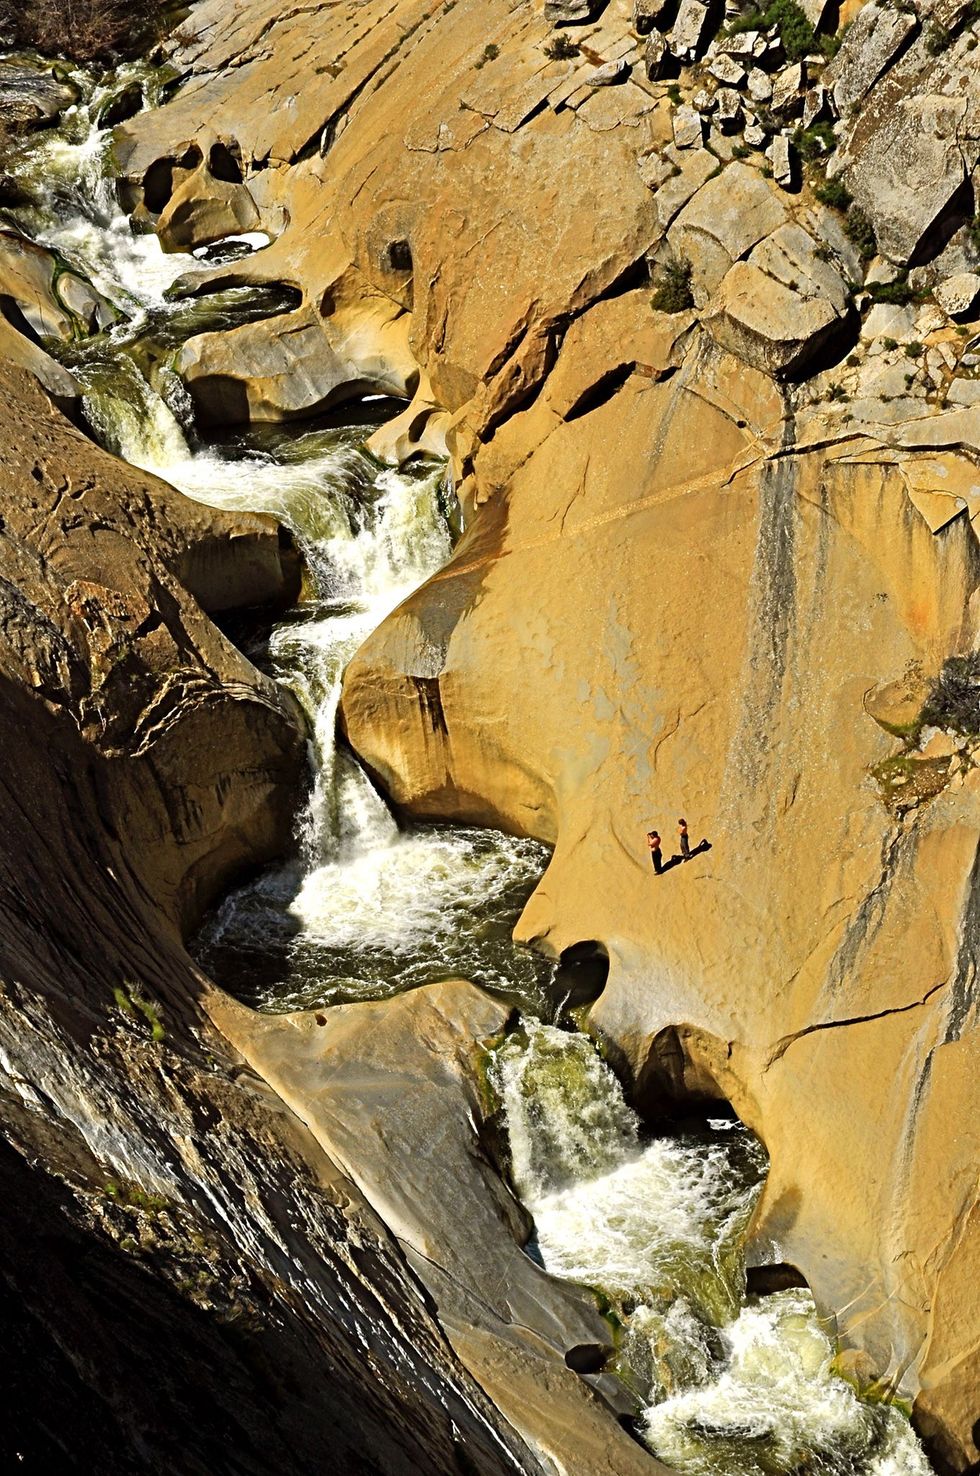 De Seven Teacups is een serie watervallen in Dry Meadow Creek die uitkomt in de rivier Kern in Sequoia National Forest